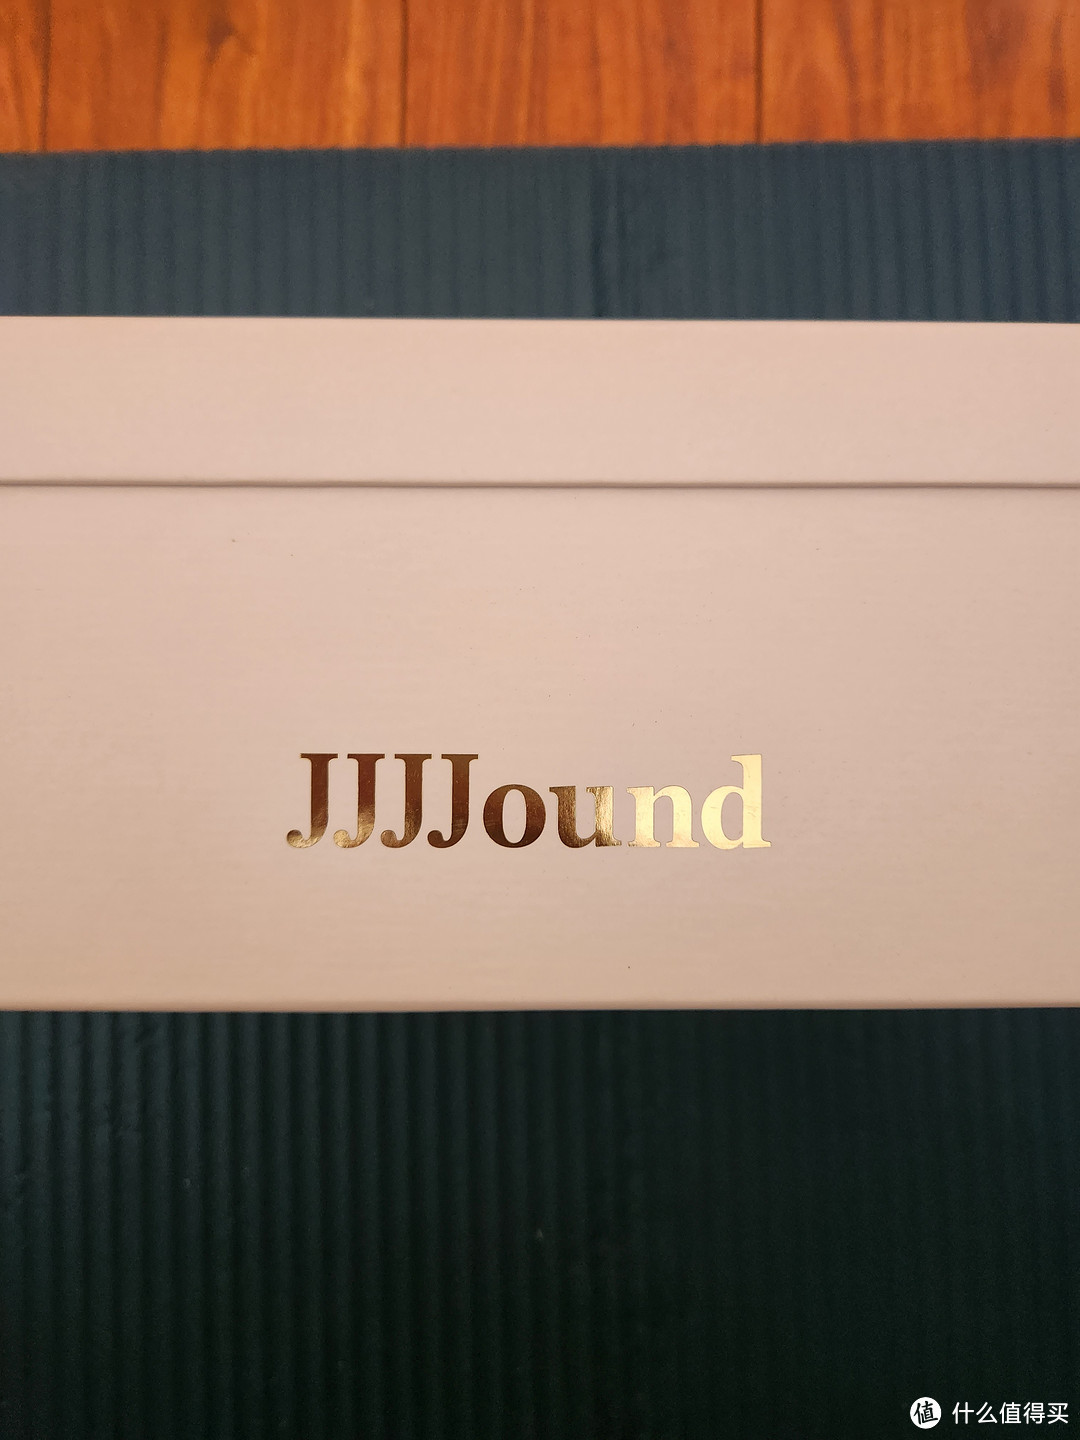 联名jjjjound，能让puma更好卖吗？